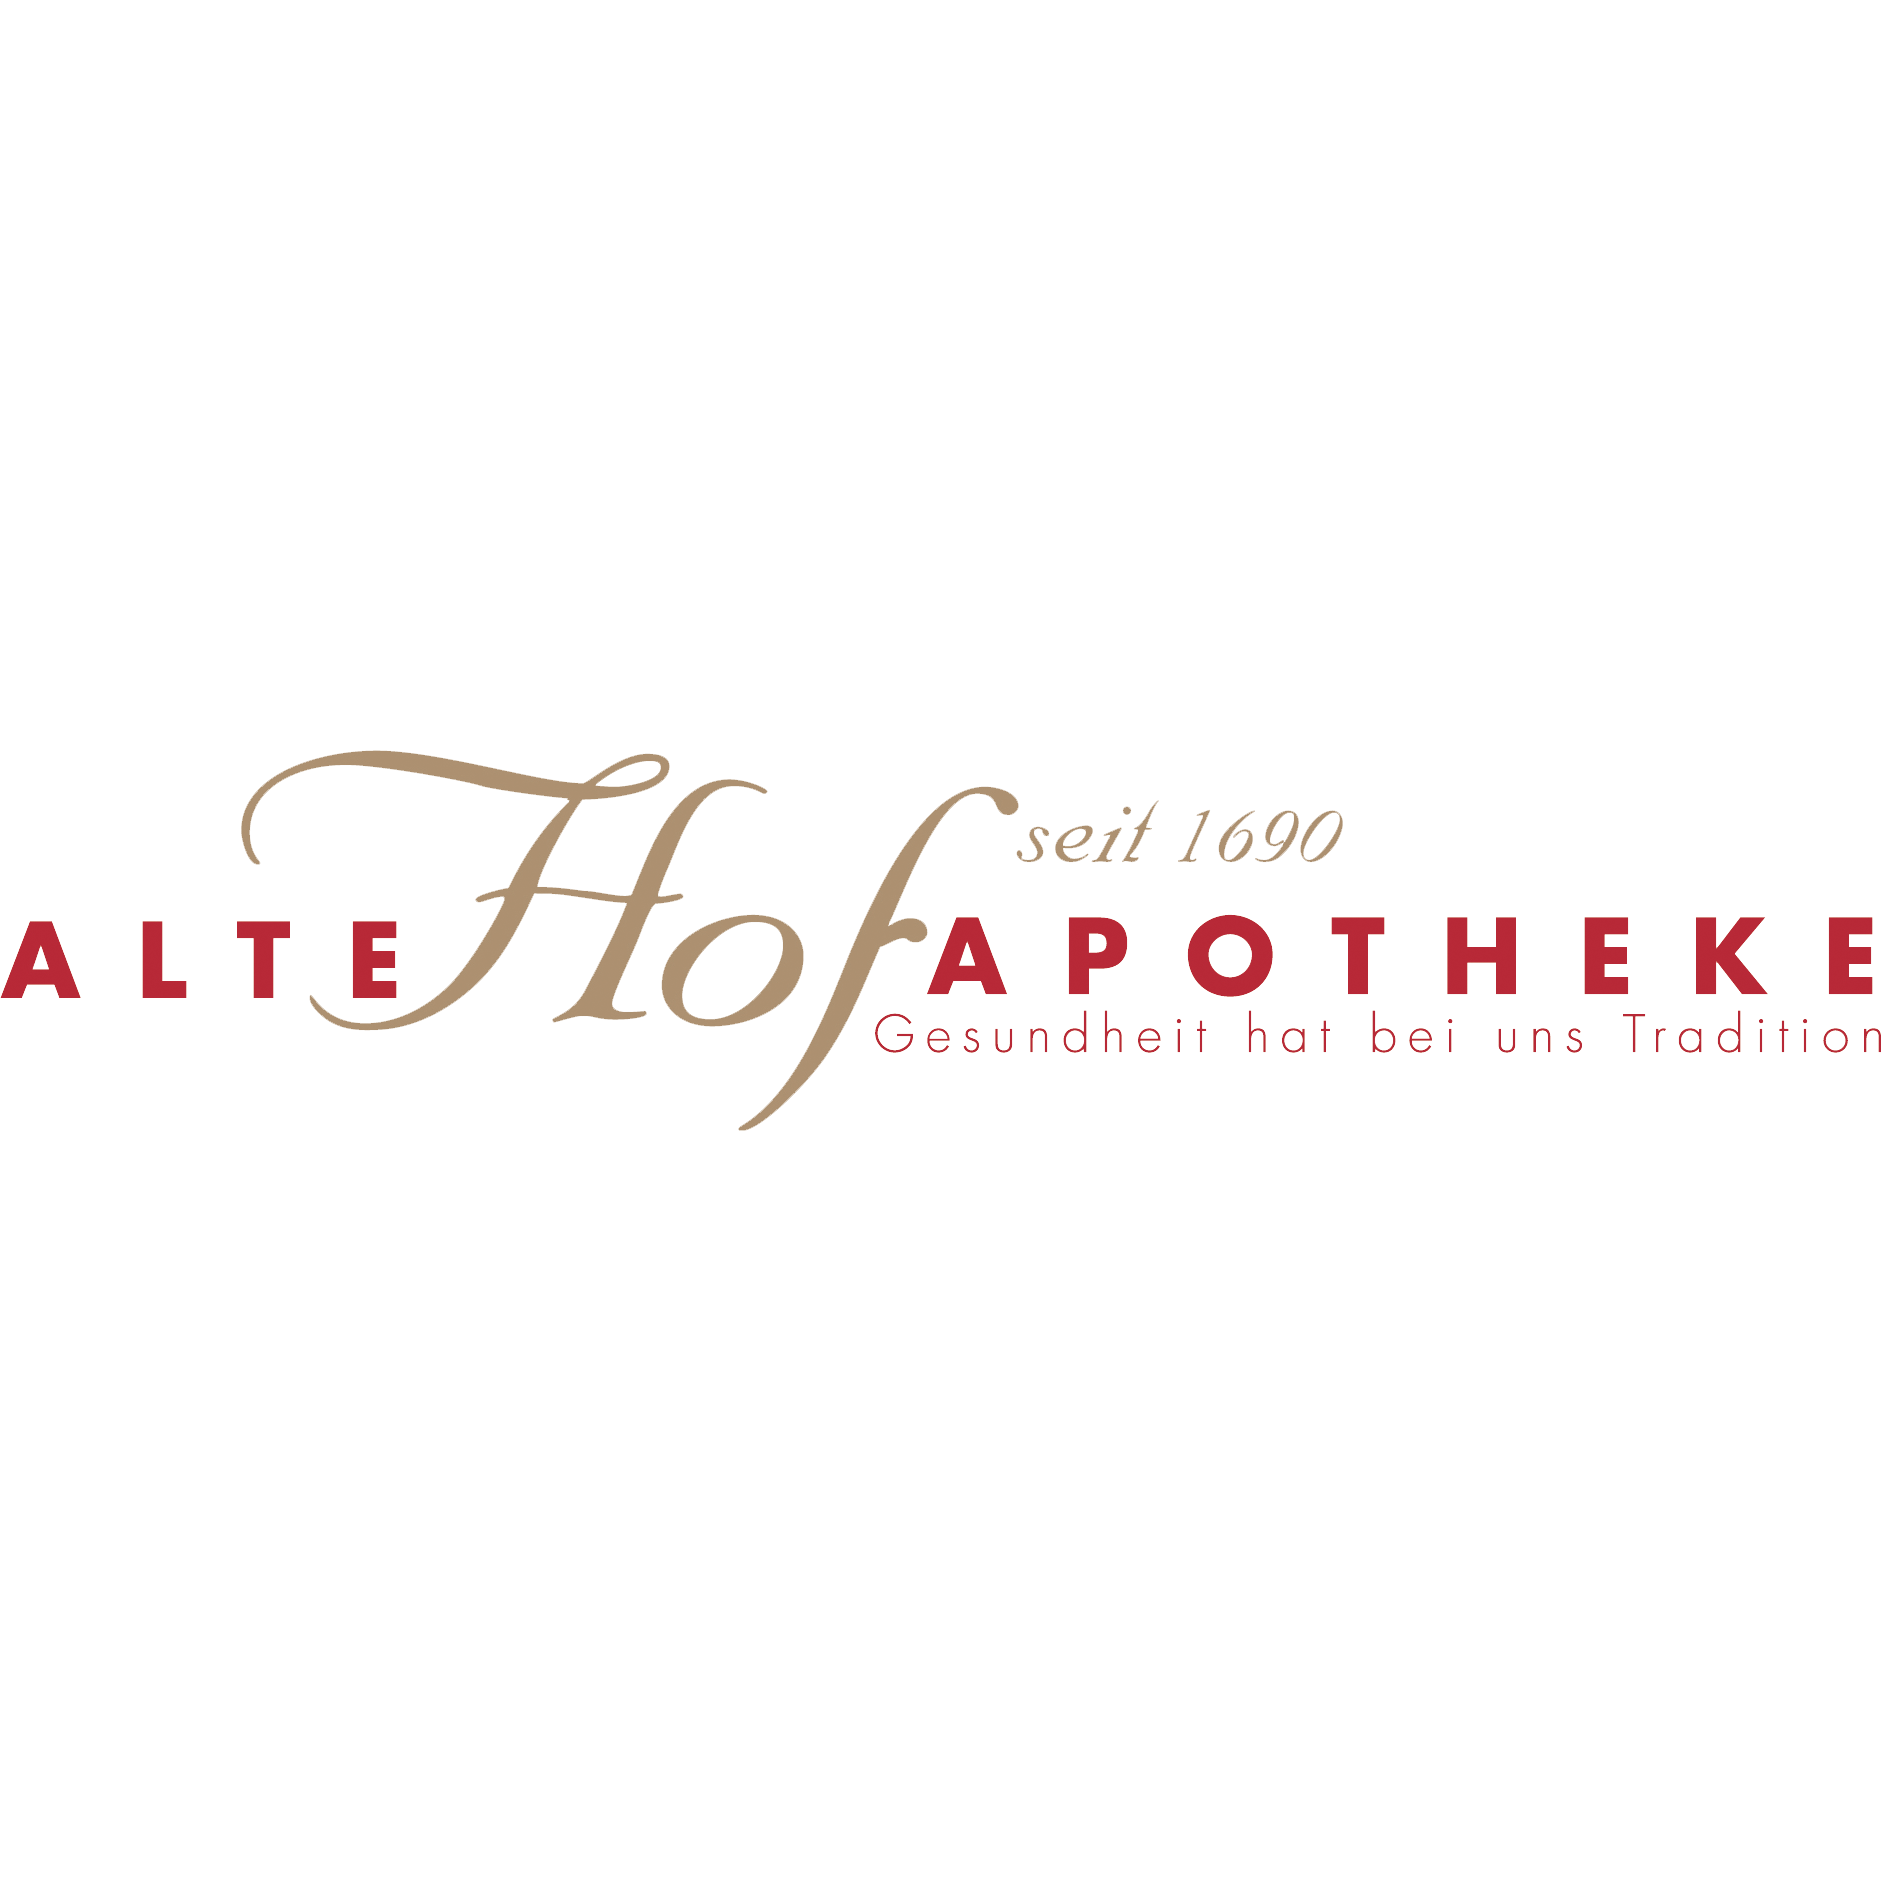 Alte Hof-Apotheke in Baden-Baden - Logo